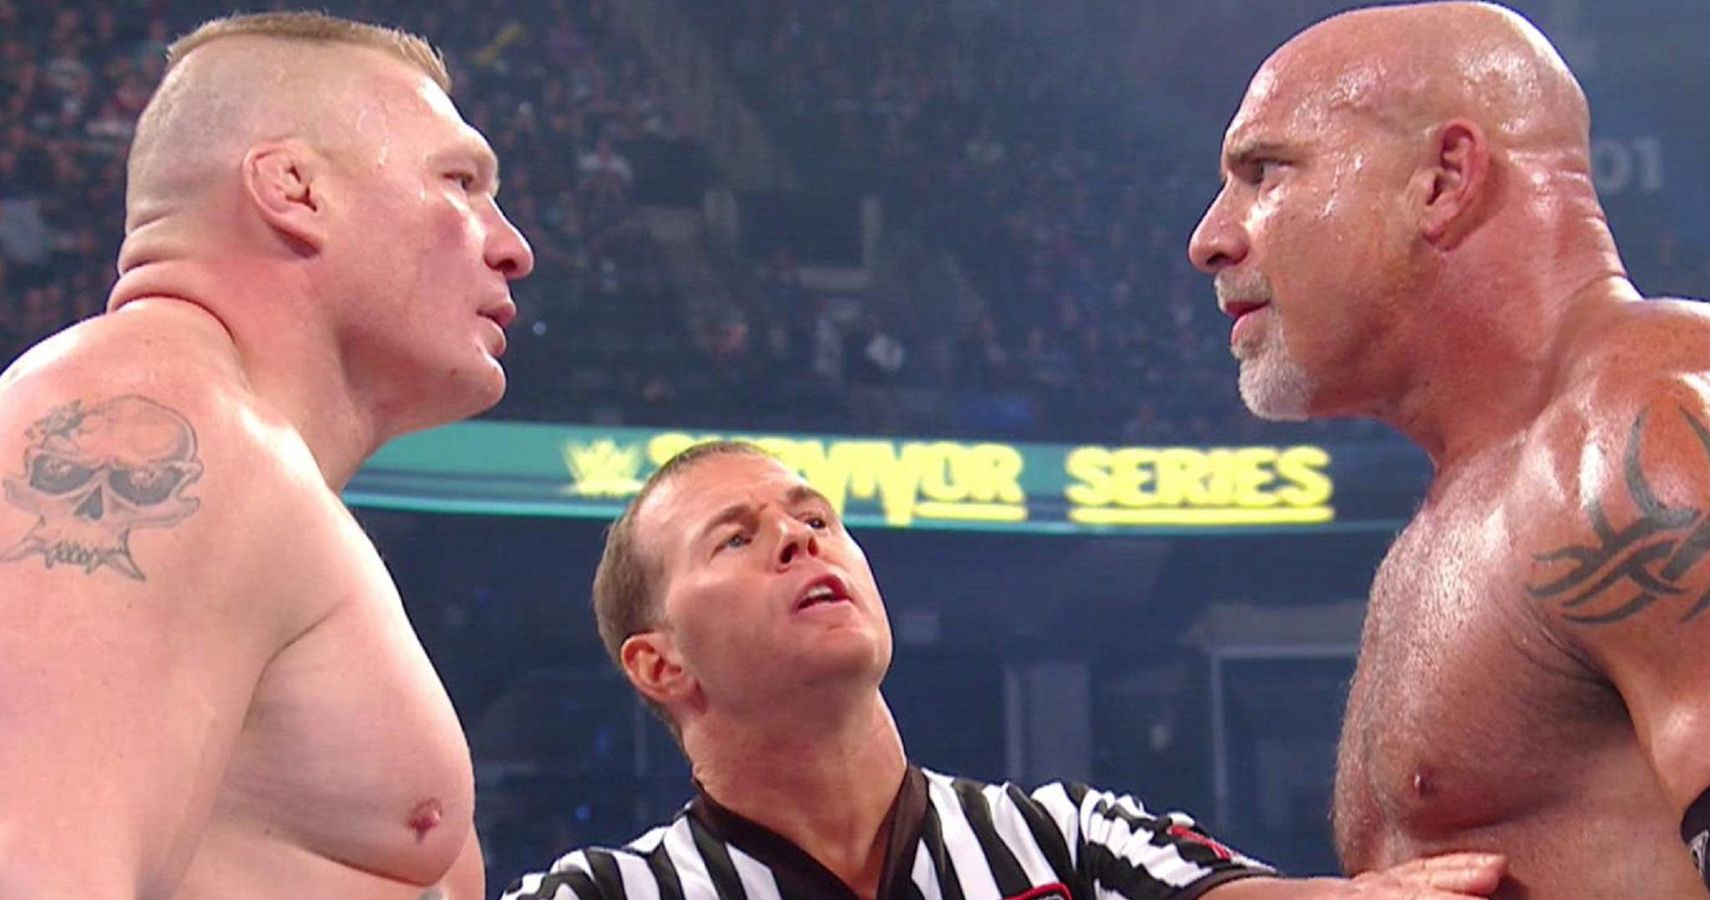 Goldberg vs Brock Lesnar